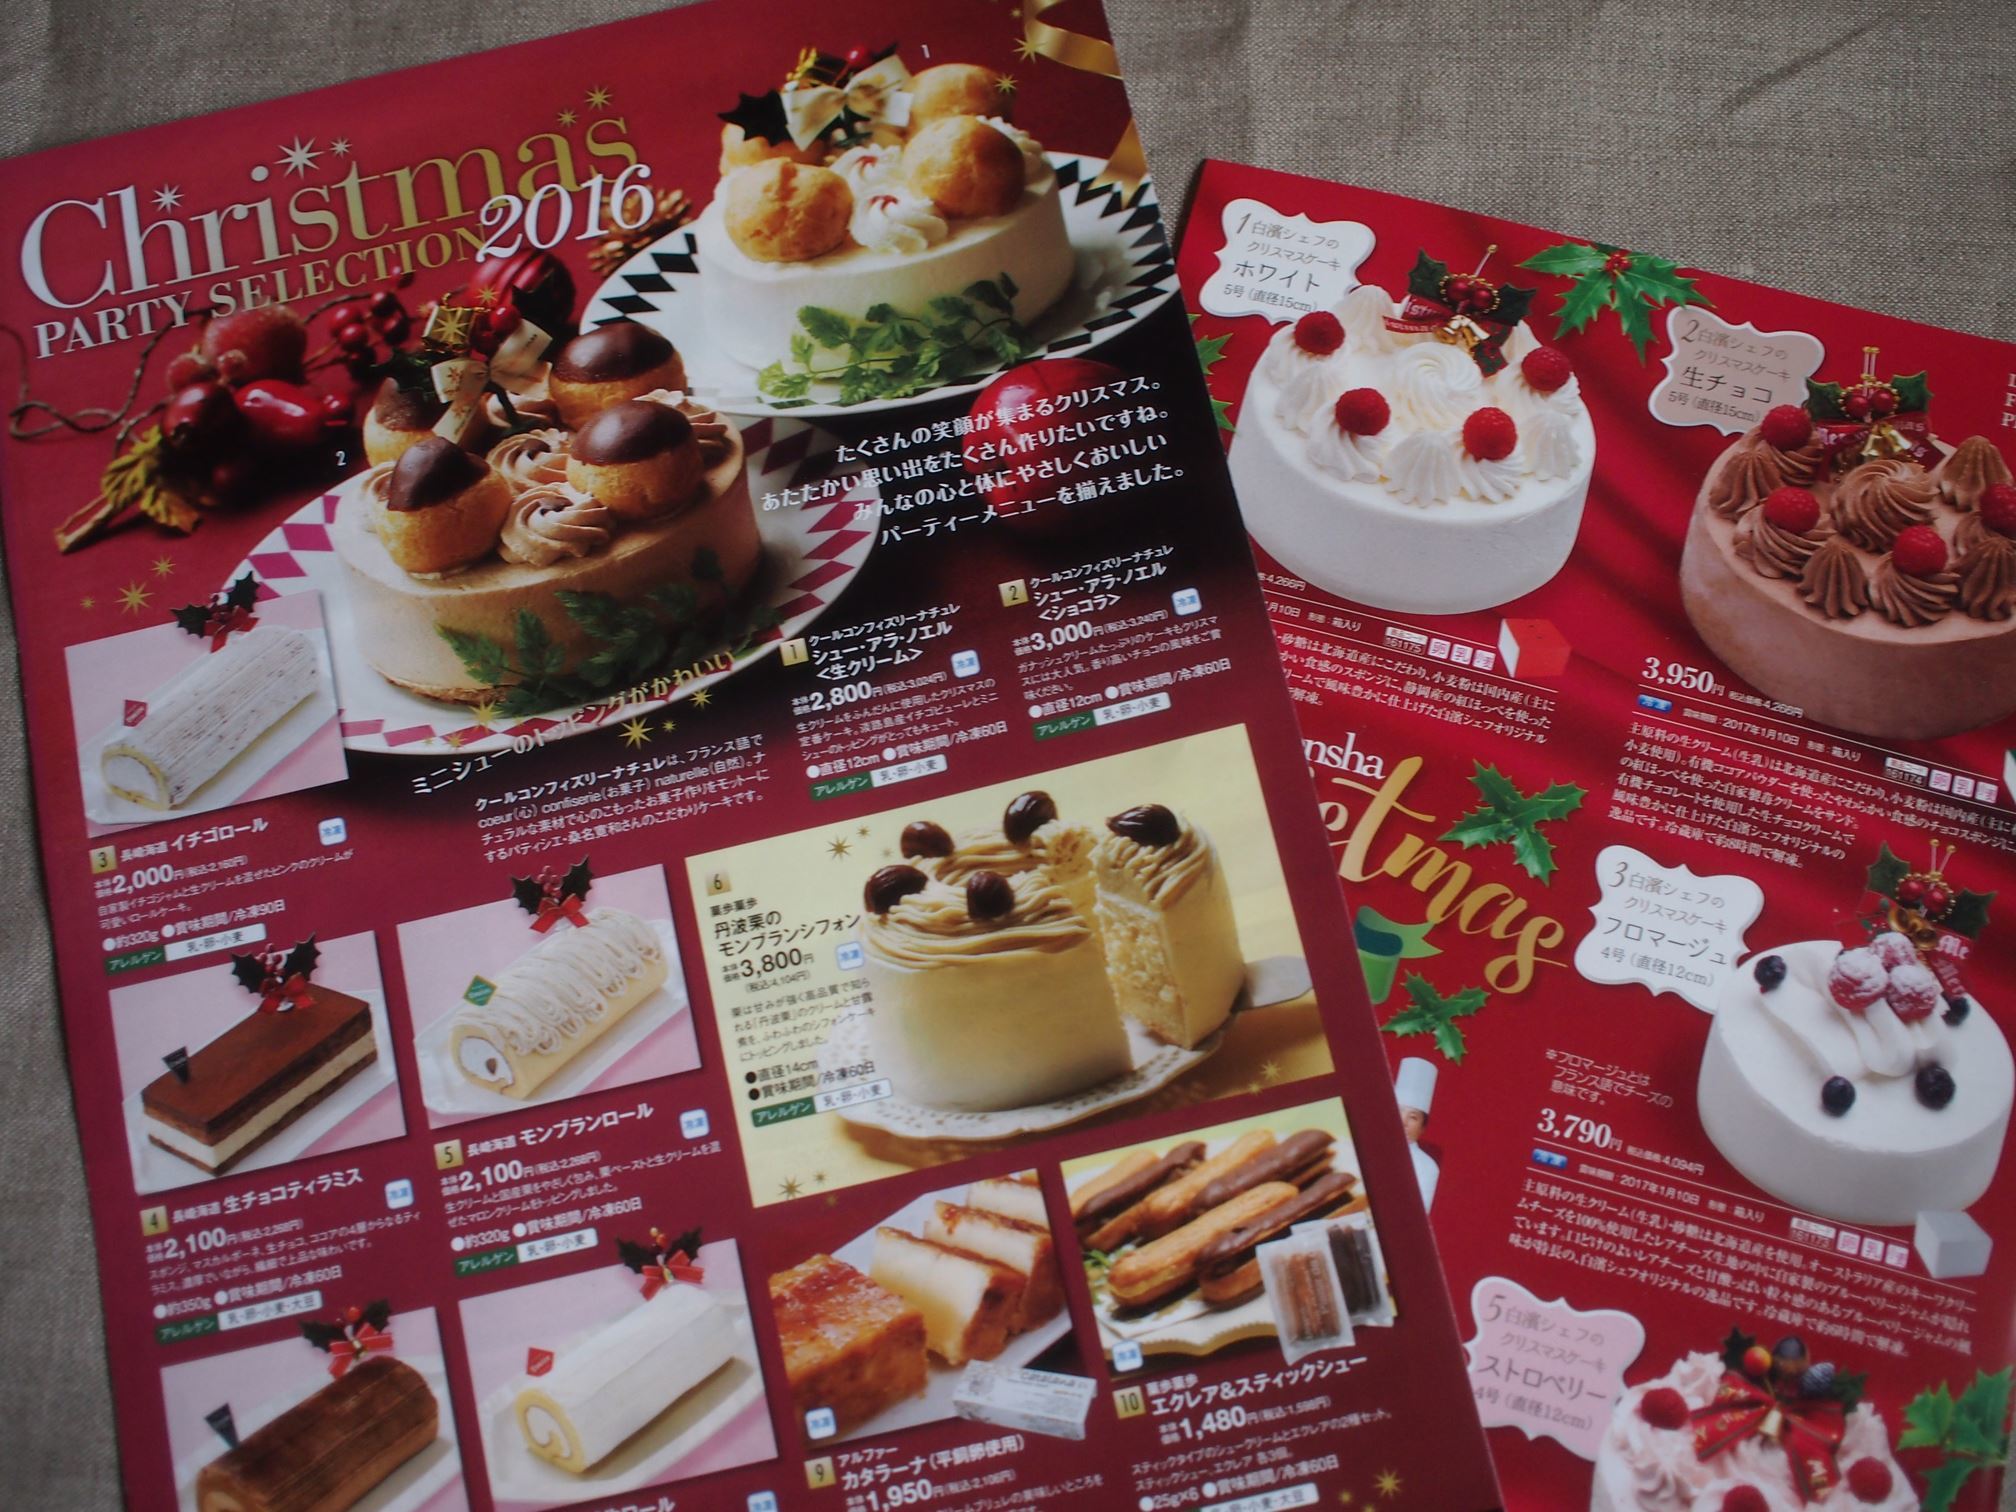 クリスマス お正月 商品 姫路のマクロビオティック料理教室